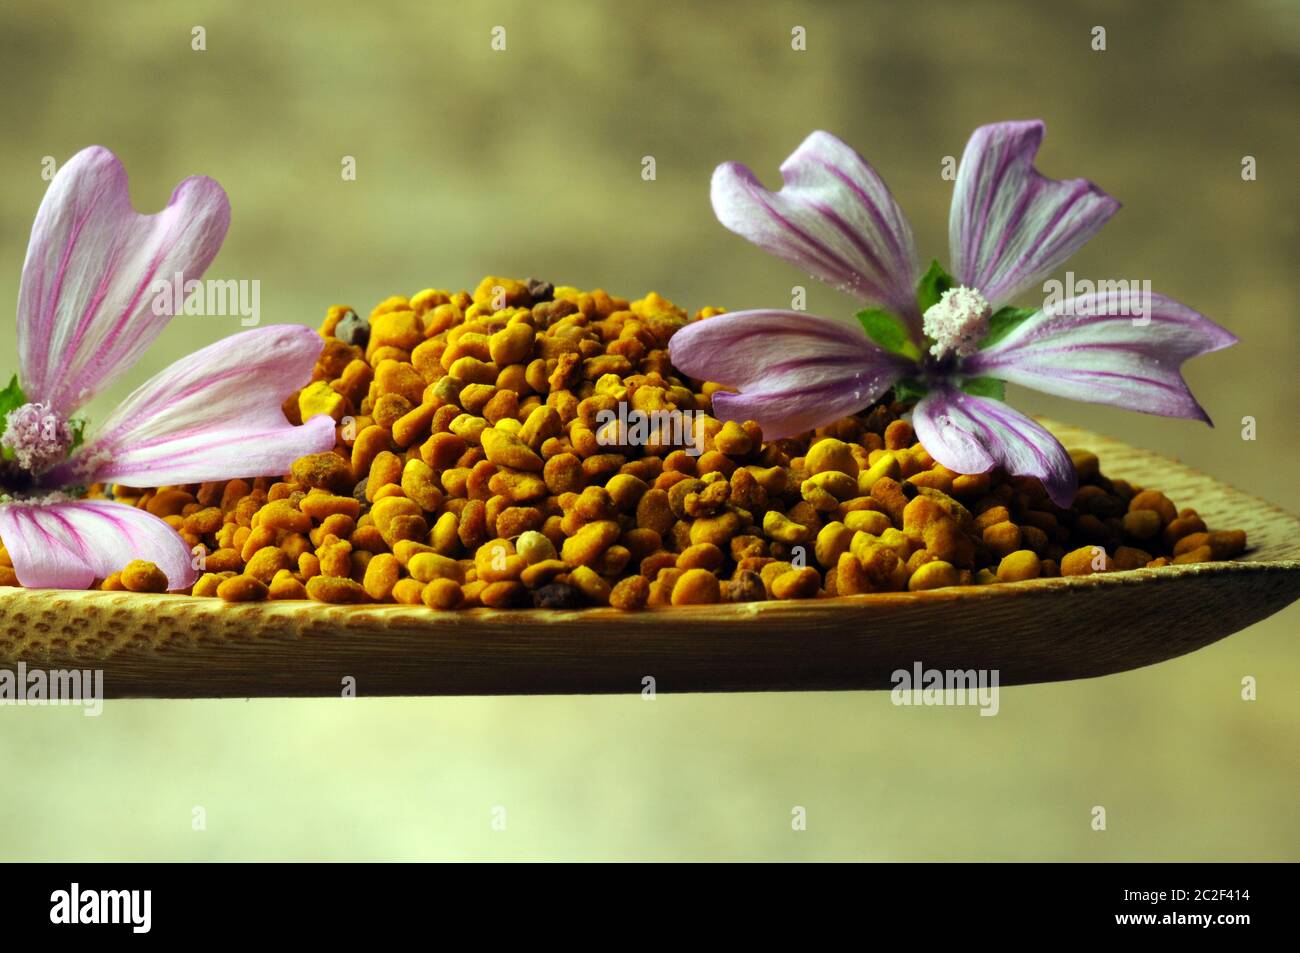 Polen granular con flor de mallow Foto de stock